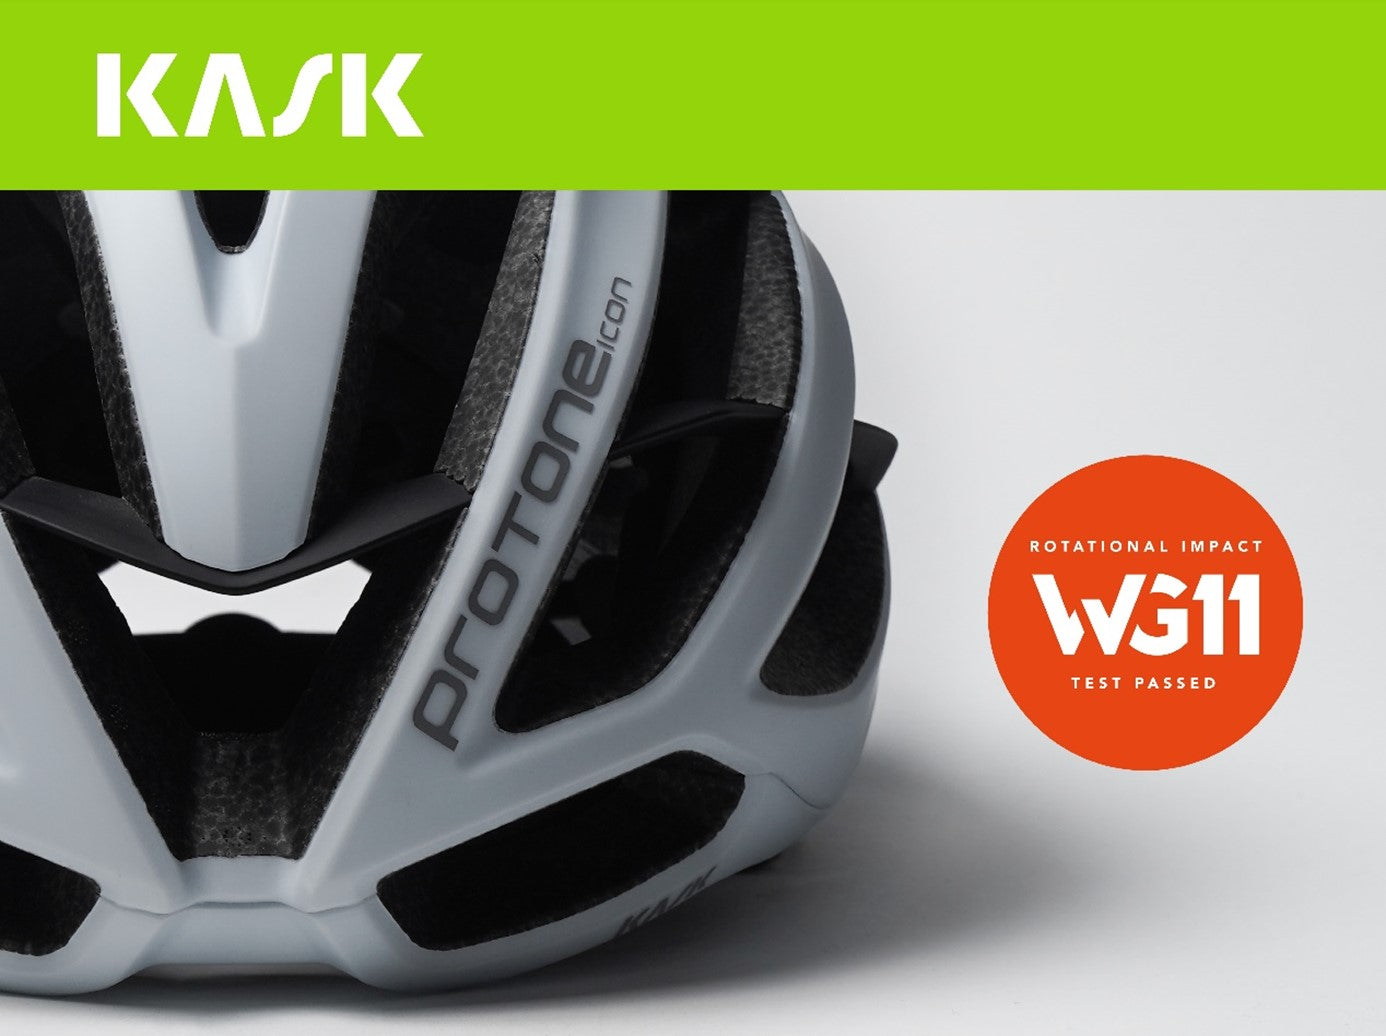 KASK 進一步確立旋轉衝擊 WG11 測試：準確測量 KASK 單車頭盔對旋轉衝擊的性能